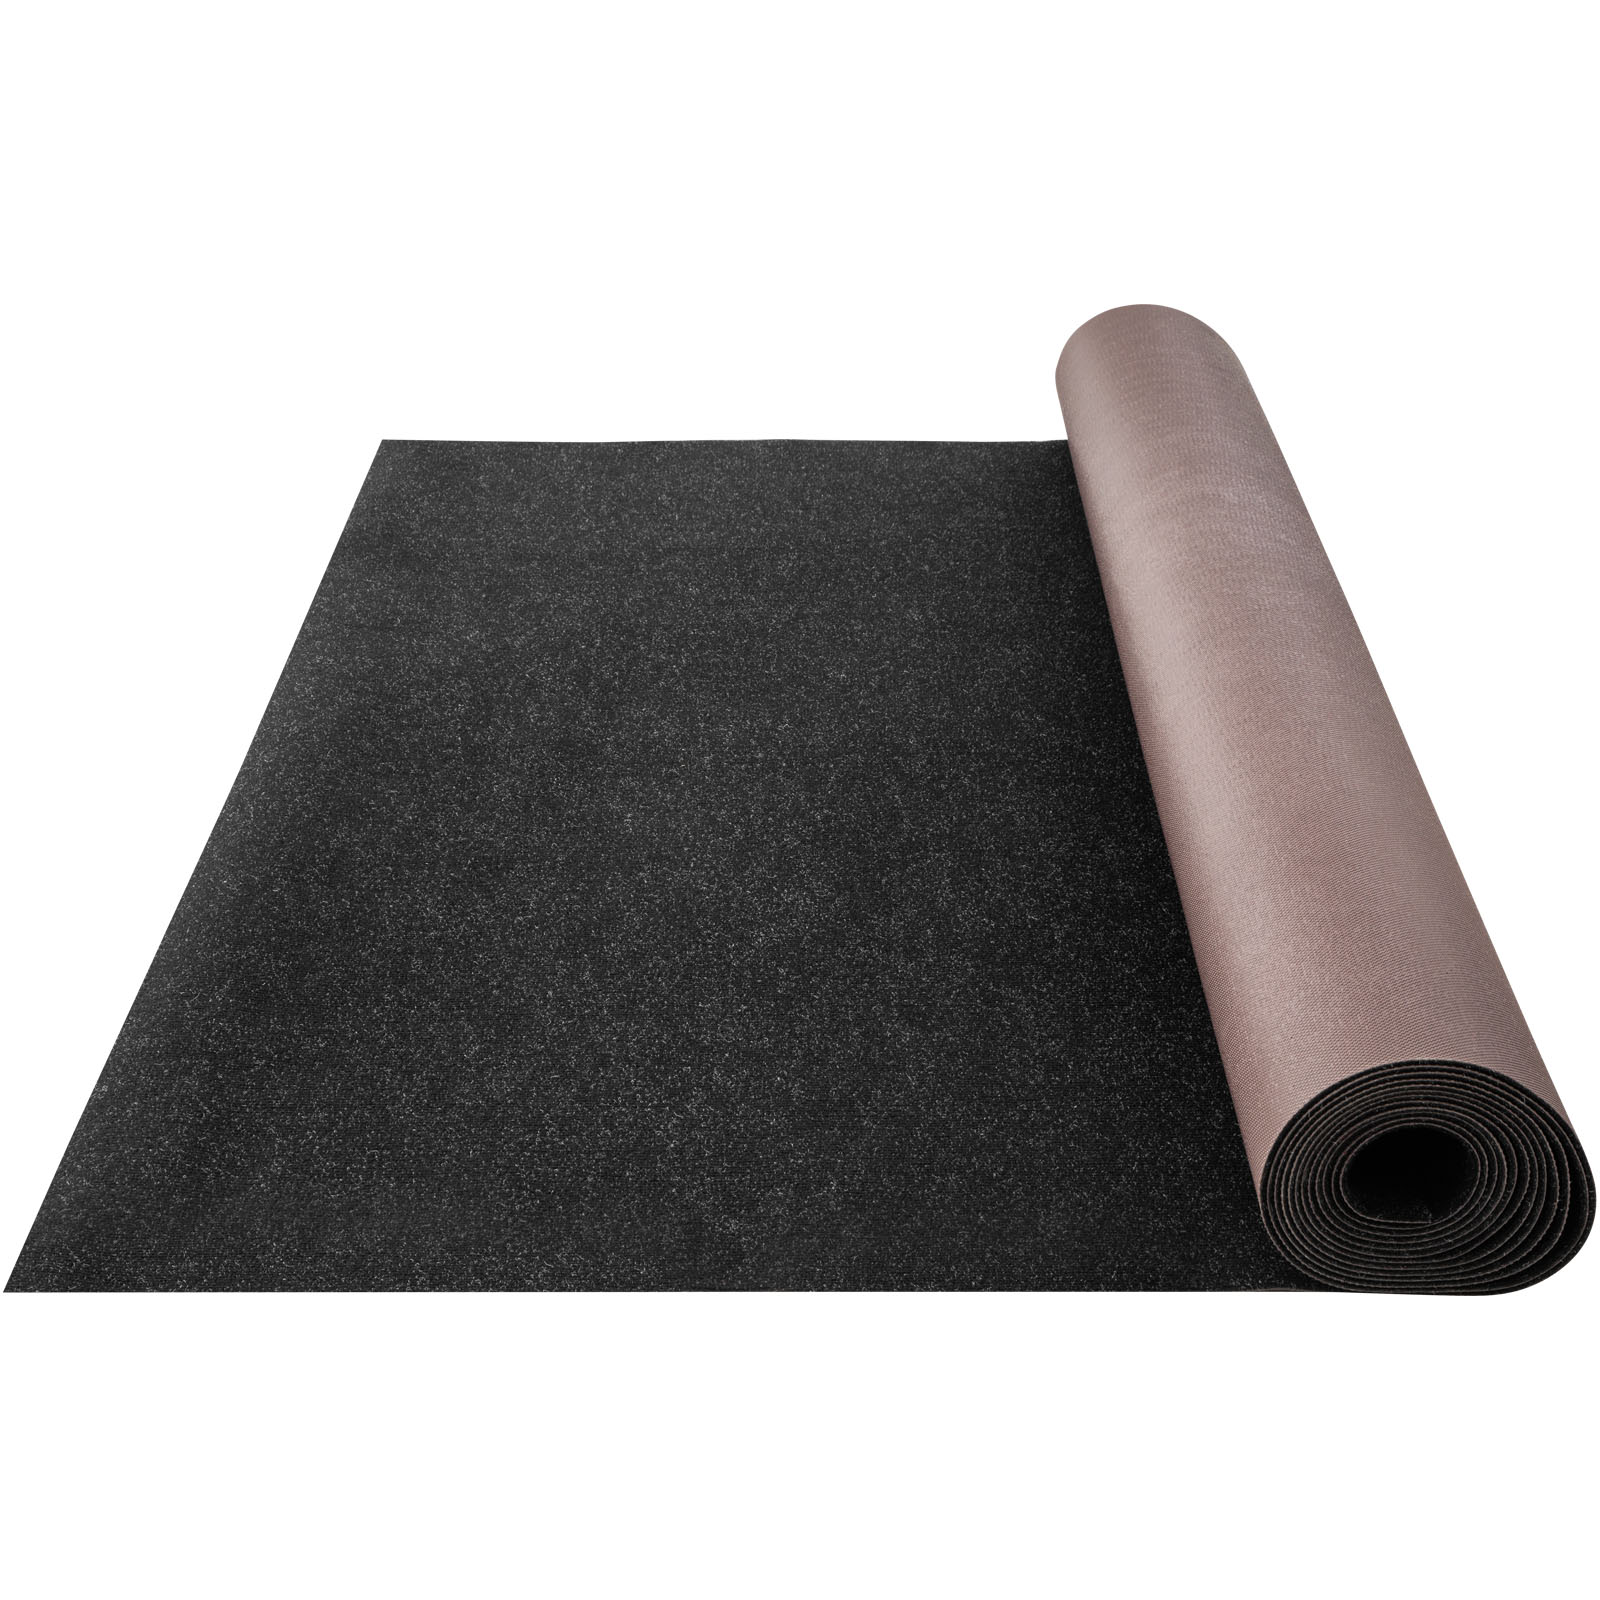 Vevor Bass Boat Carpet Cutpile Marine Carpet 6 X 30 Ft Charcoal Black In/outdoor от Vevor Many GEOs